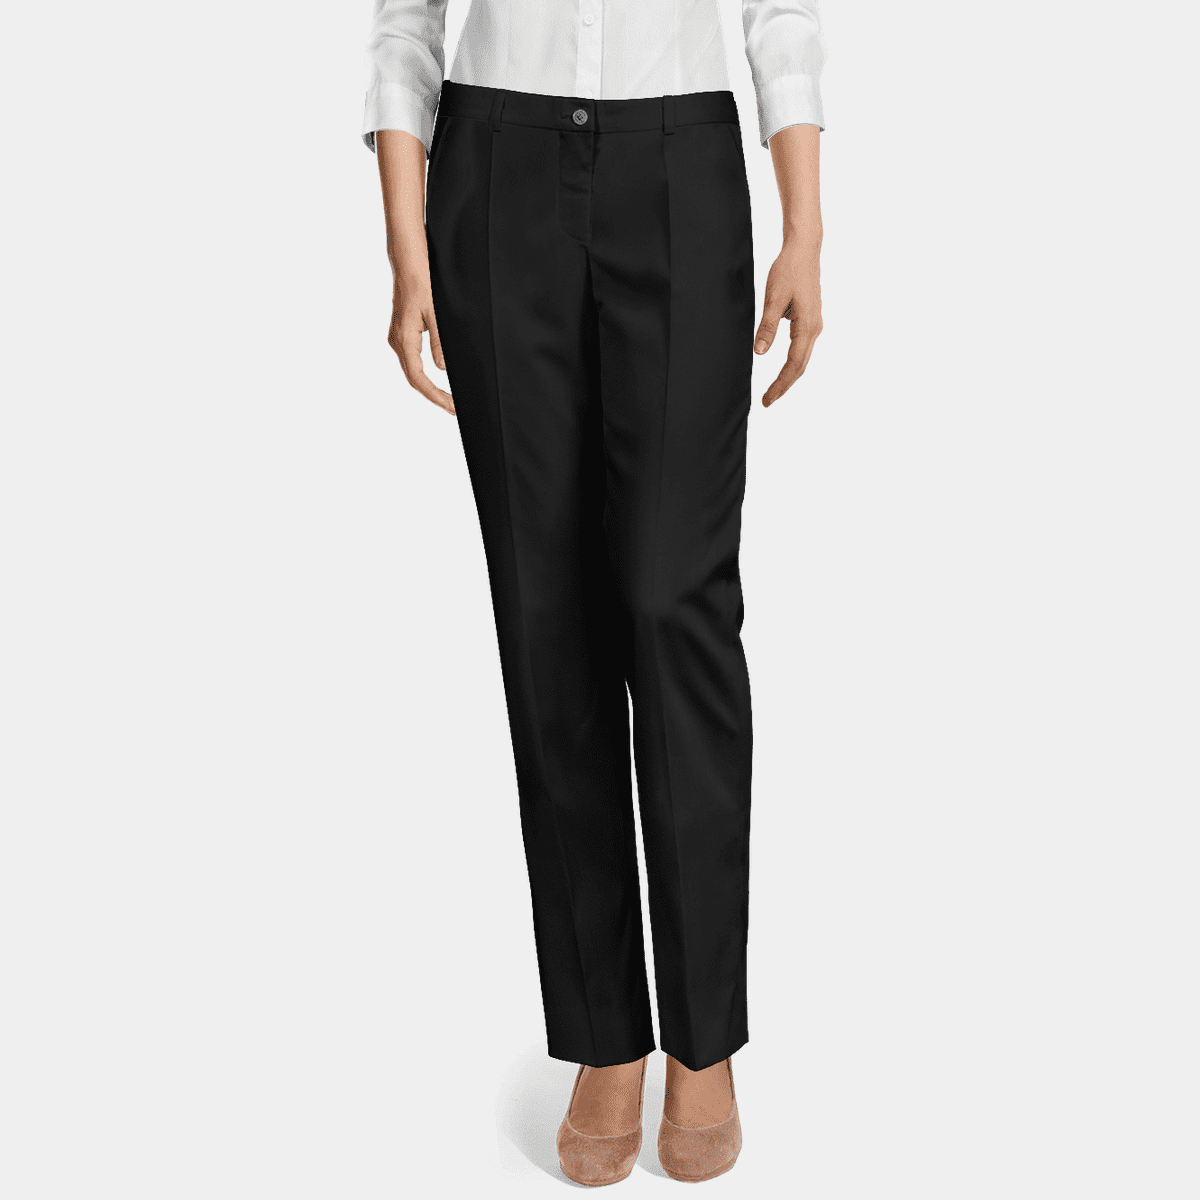 Black Polyester-Rayon flat-front Women Dress Pants